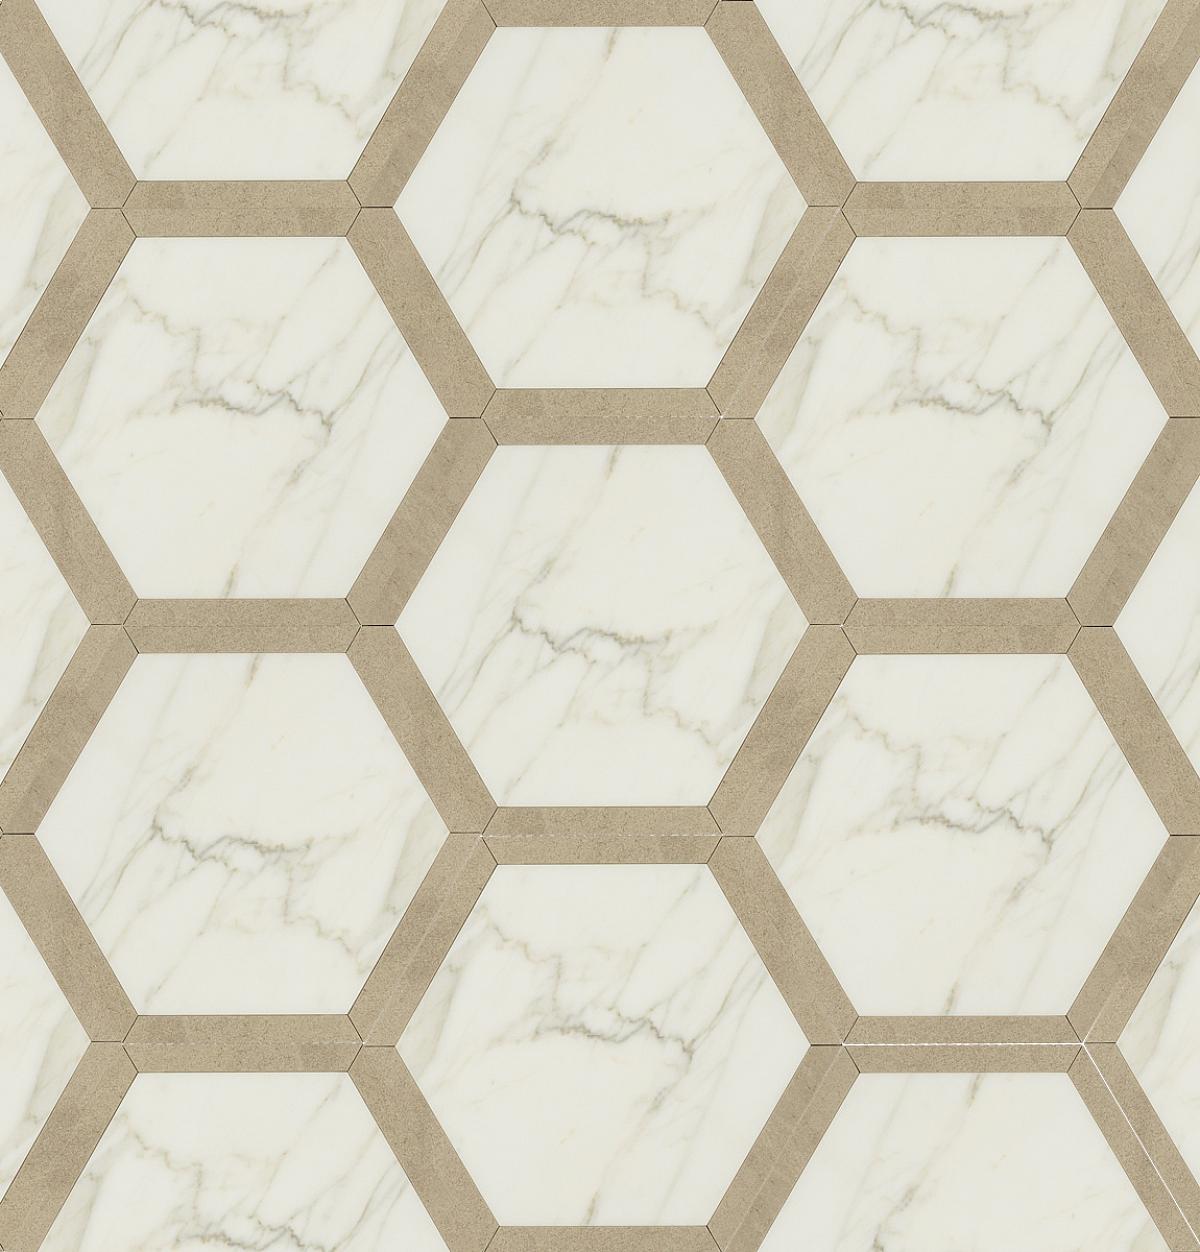 Suave Due Hexagon Decorative Tile